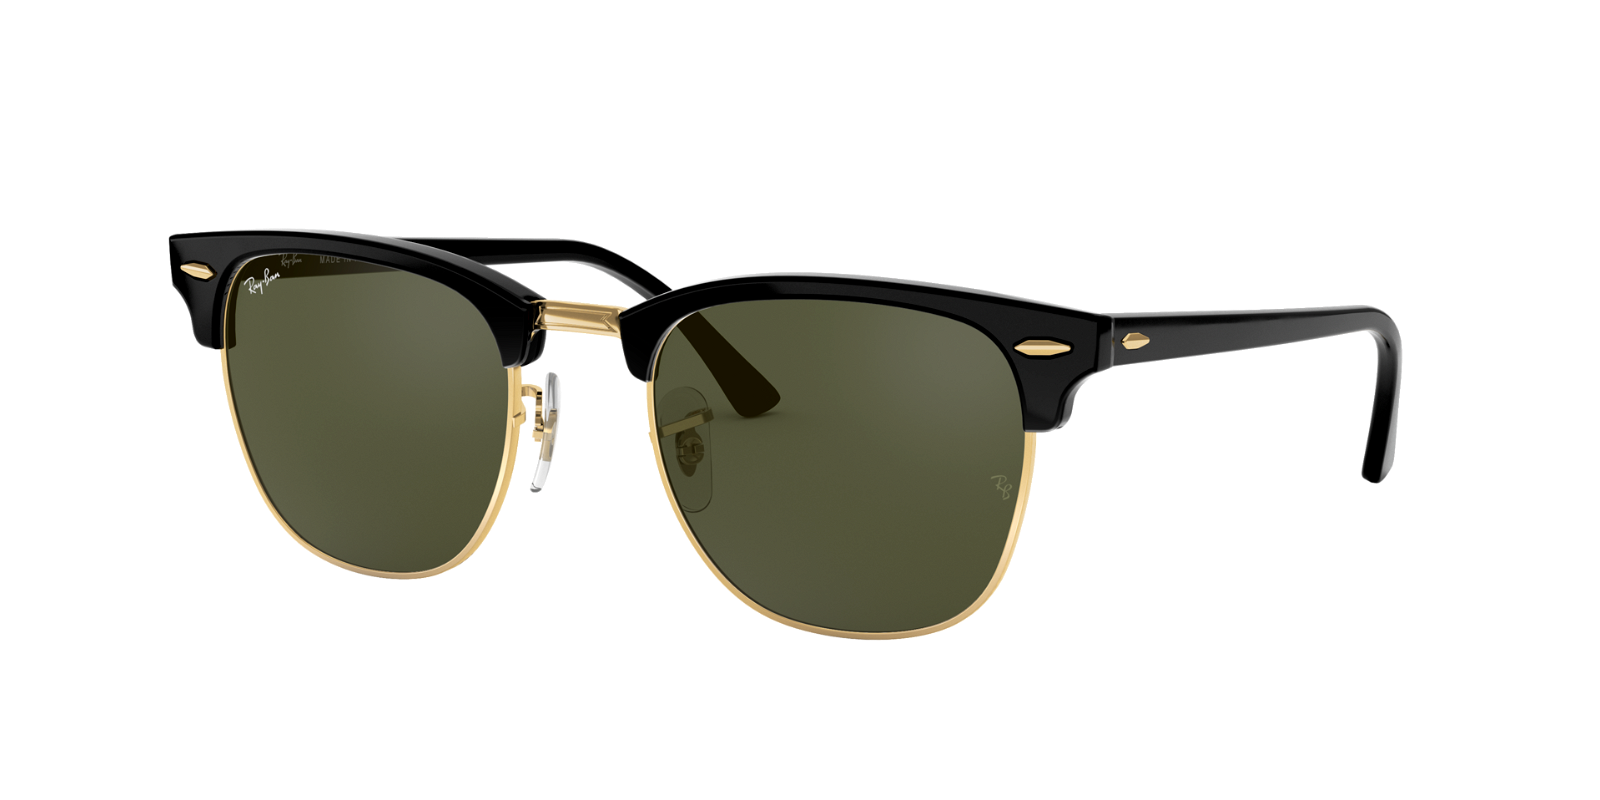 Neu+Sonnenbrille+Brille+Pilotenbrille+Vintage+modische+Gläser grau+Damen+Herren+ 